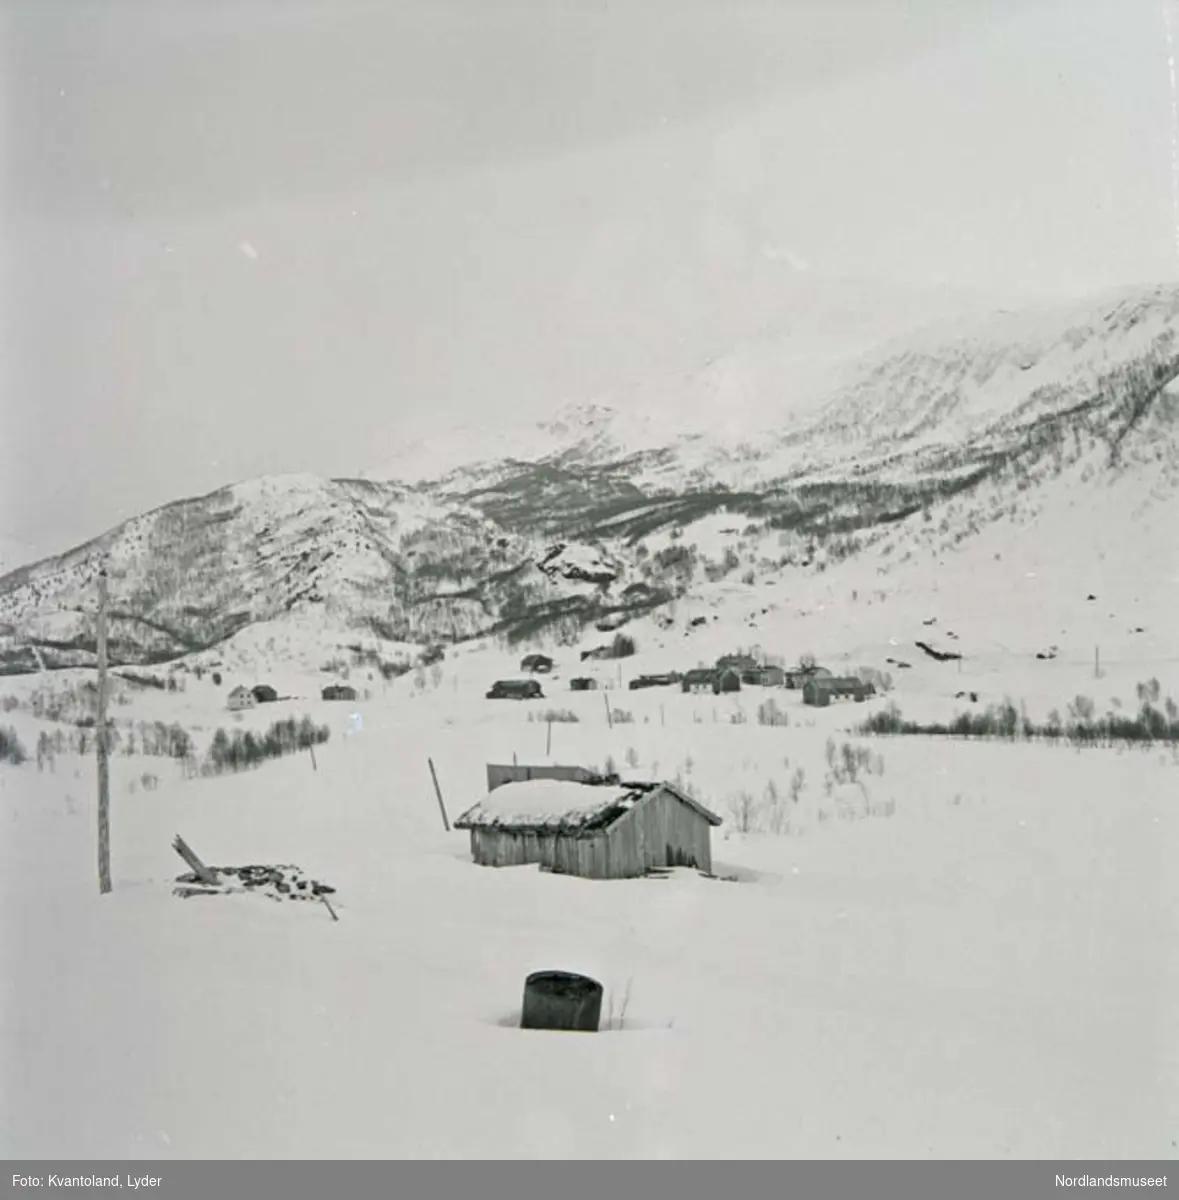 Kvantolands protokoll: Landskapsbilde fra Bonå, vinter